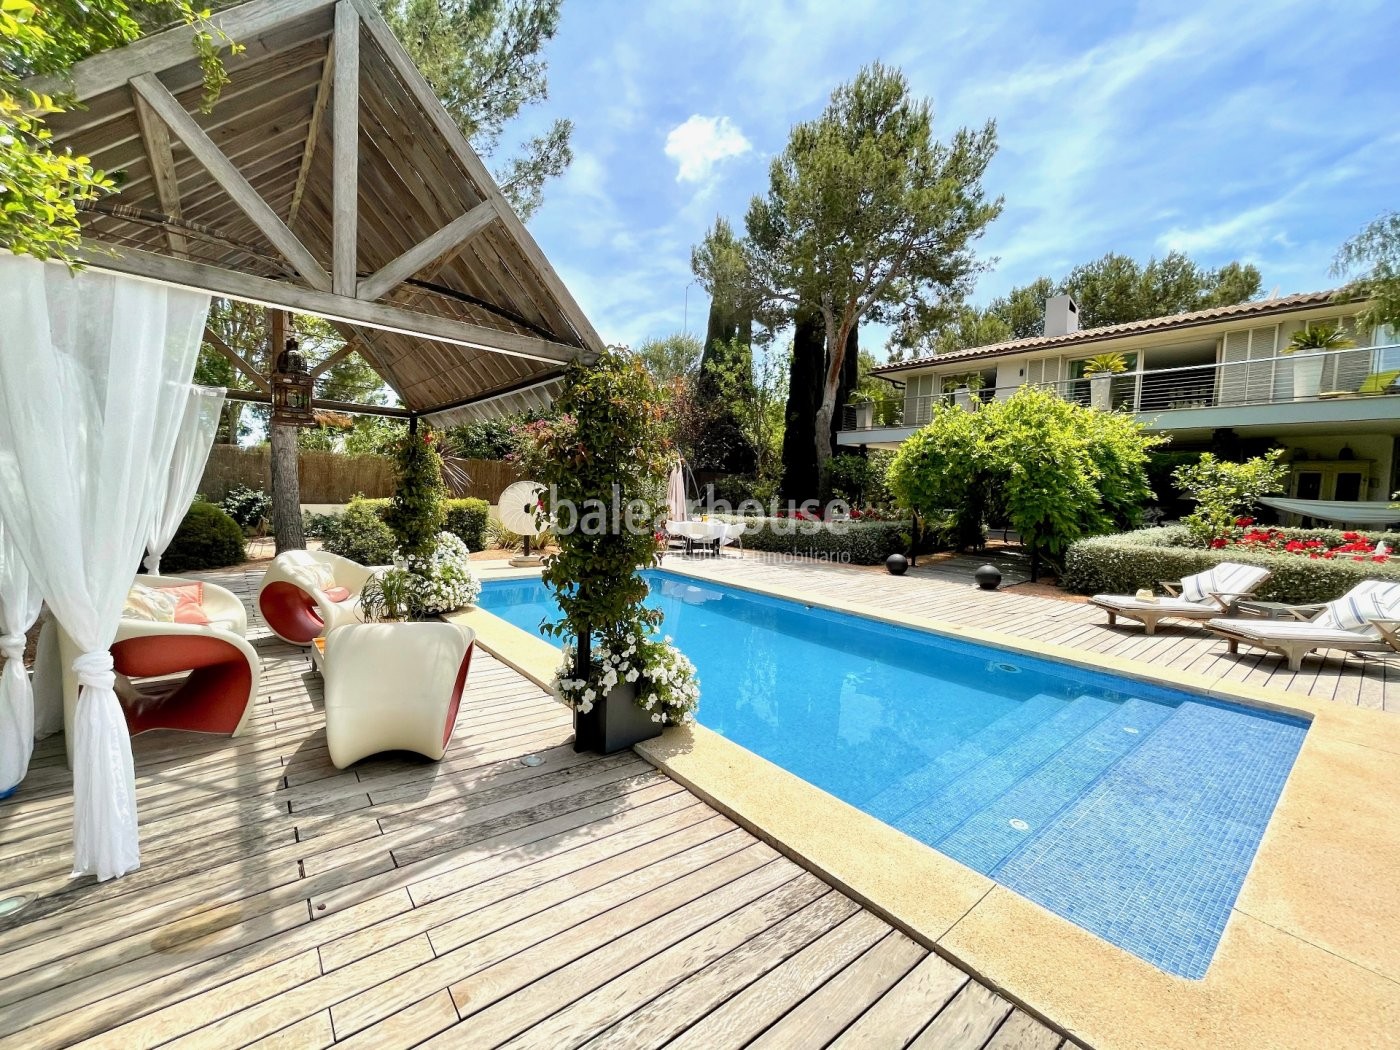 Villa mit Schwimmbad und mediterranem Garten in Sol de Mallorca, in der Nähe von schönen Buchten